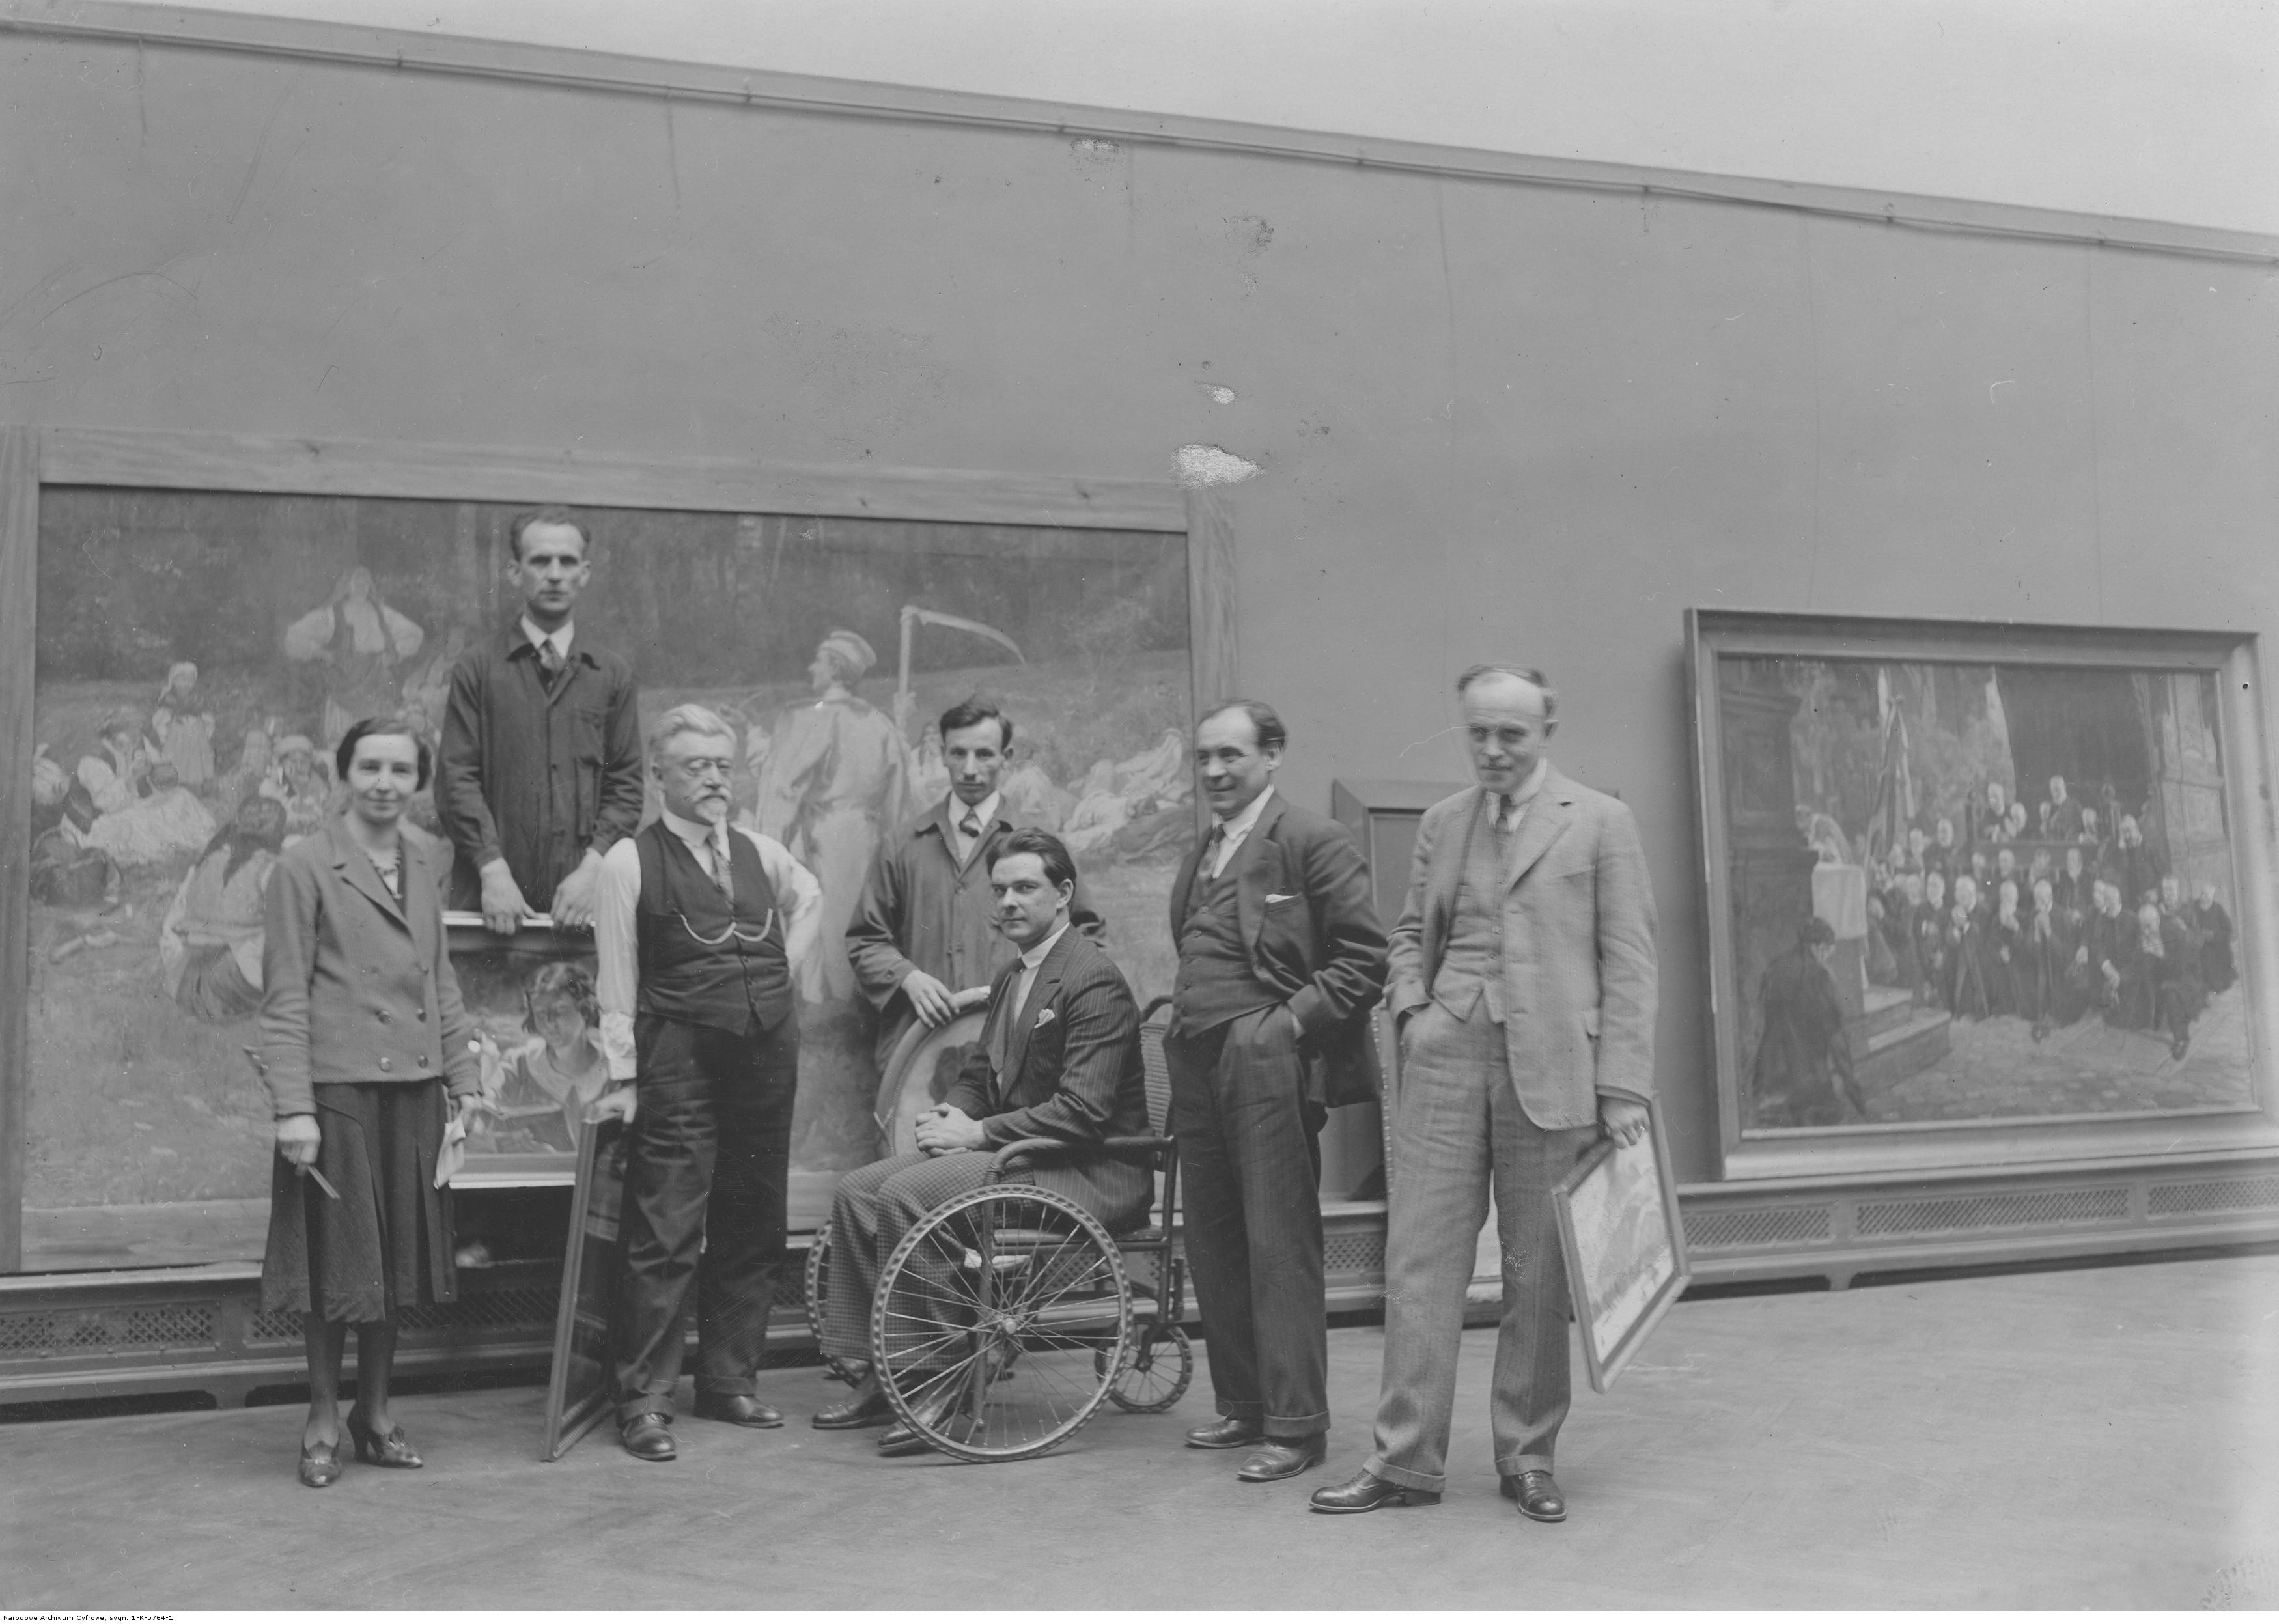 Zygmunt Waliszewski (w środku na wózku inwalidzkim) na wystawie prac artysty Wincentego Wodzinowskiego w Krakowie w 1932 roku, źródło: Narodowe Archiwum Cyfrowe